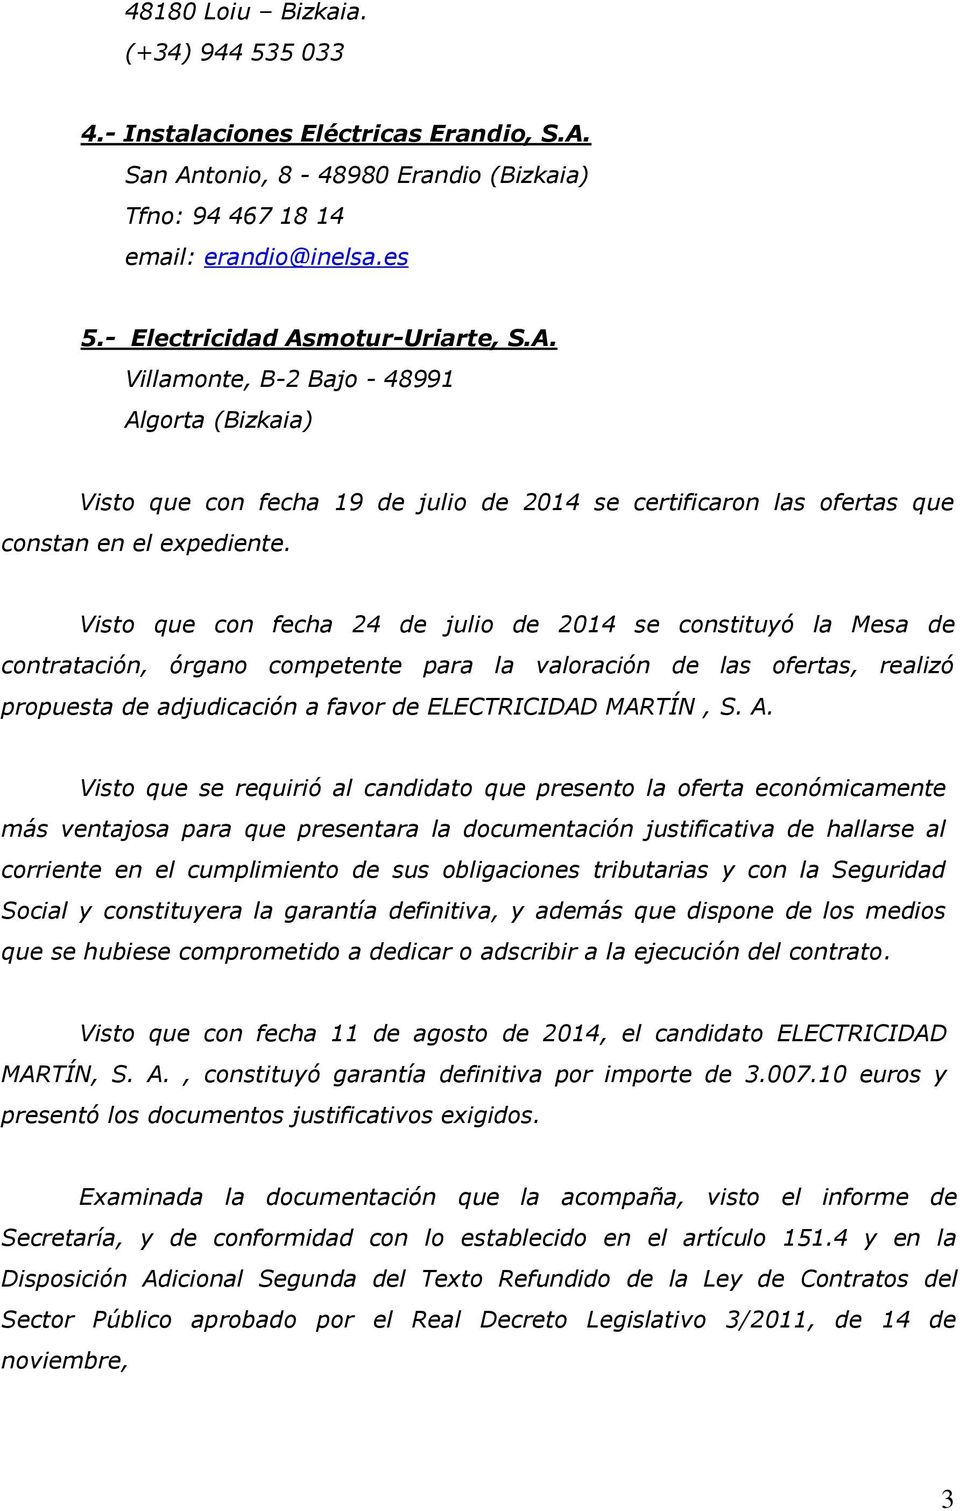 Visto que con fecha 24 de julio de 2014 se constituyó la Mesa de contratación, órgano competente para la valoración de las ofertas, realizó propuesta de adjudicación a favor de ELECTRICIDAD MARTÍN, S.